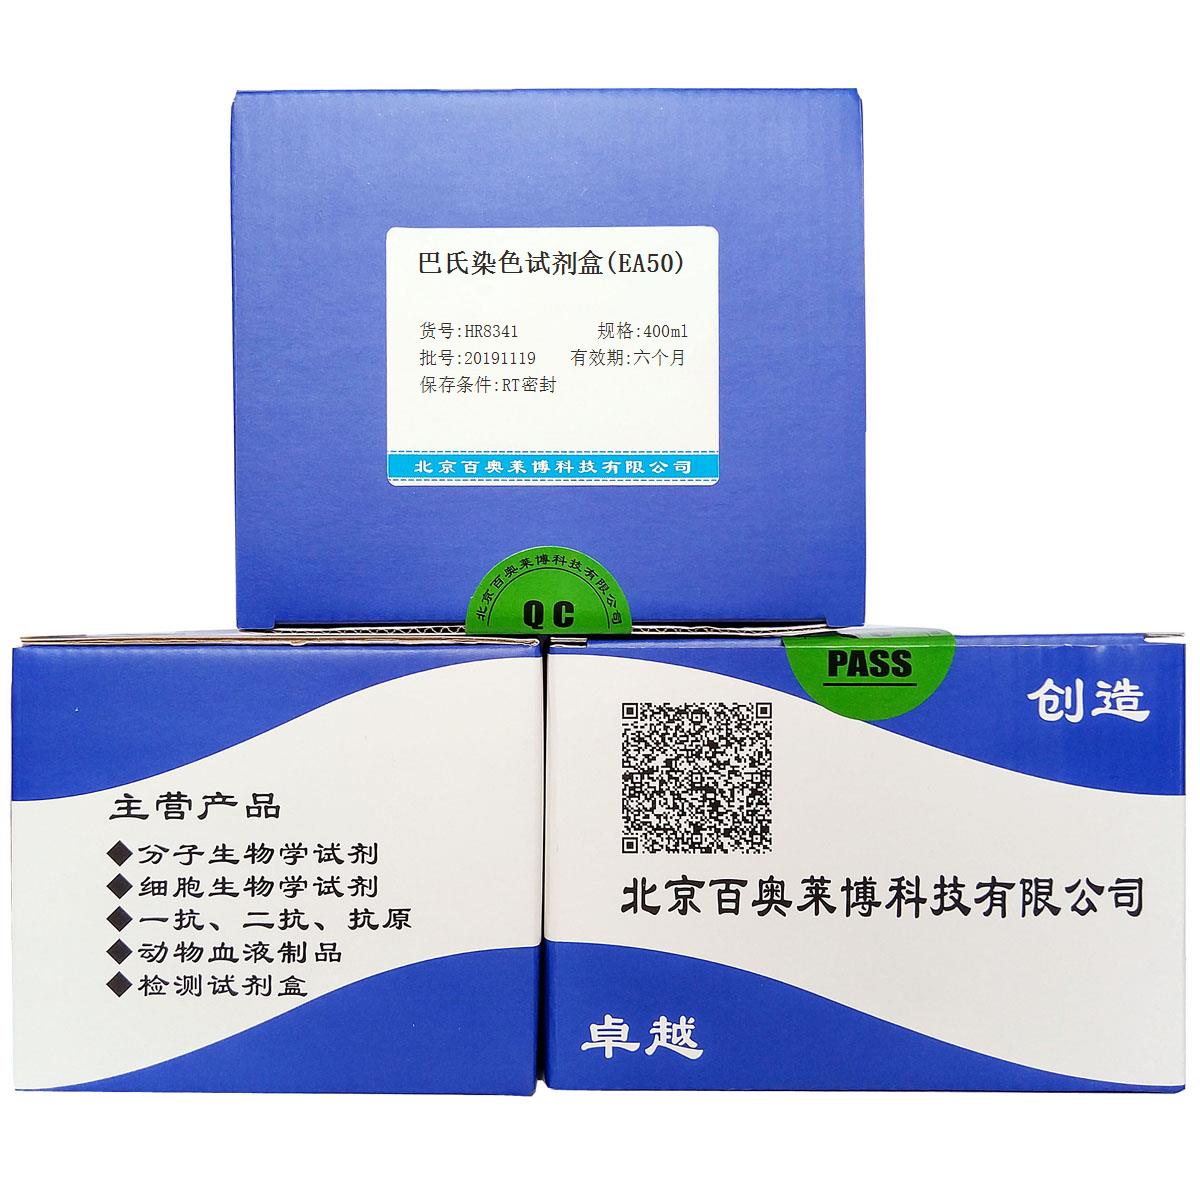 巴氏染色试剂盒(EA50)北京品牌